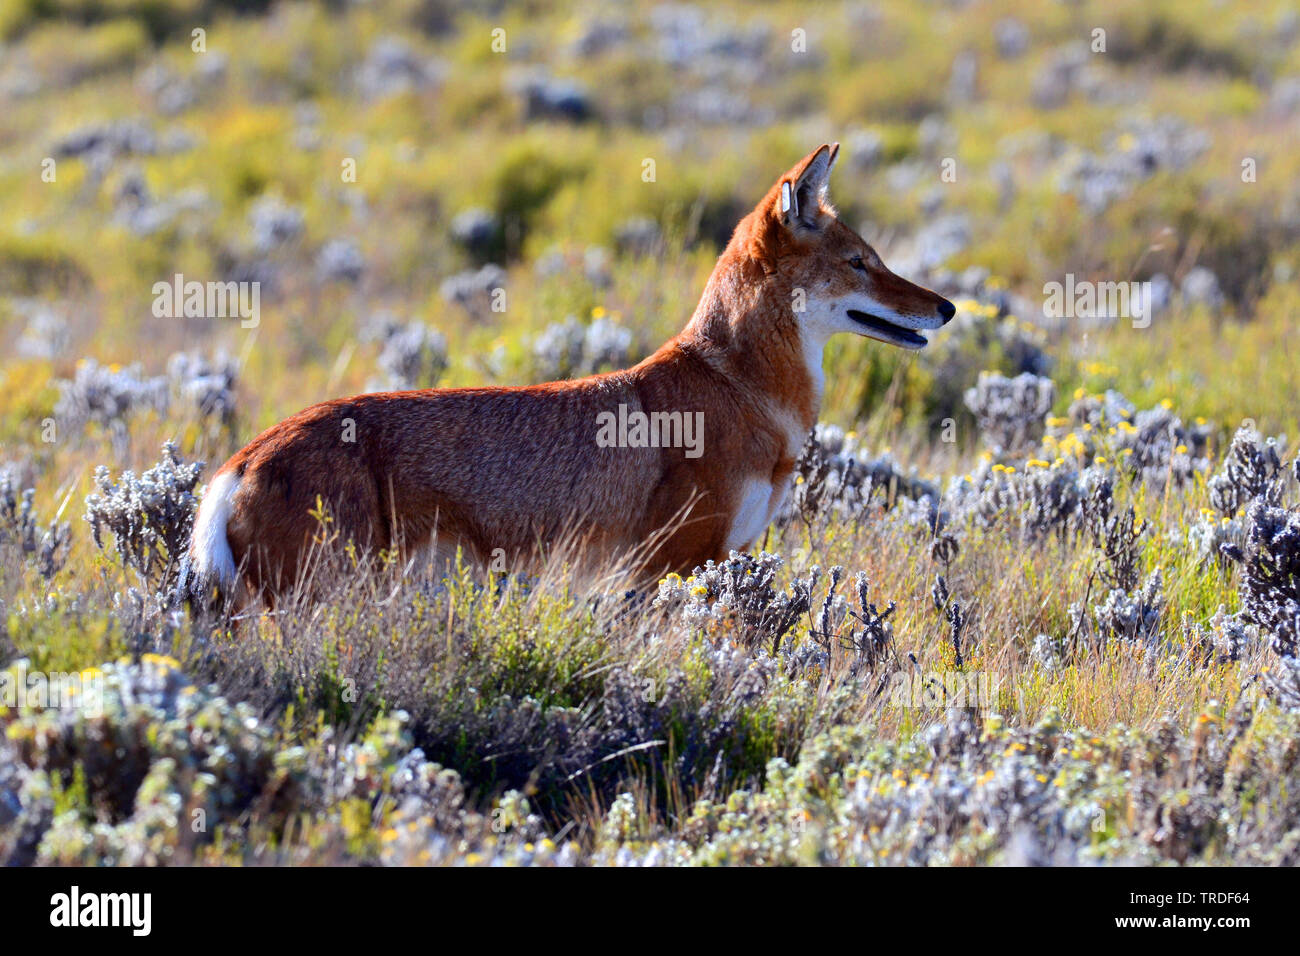 Simien Schakal, äthiopischen Wolf, Simien fox (Canis simensis), eine vom Aussterben bedrohte raubtier endemisch im äthiopischen Hochland., Äthiopien, Bale Mountains Nationalpark Stockfoto